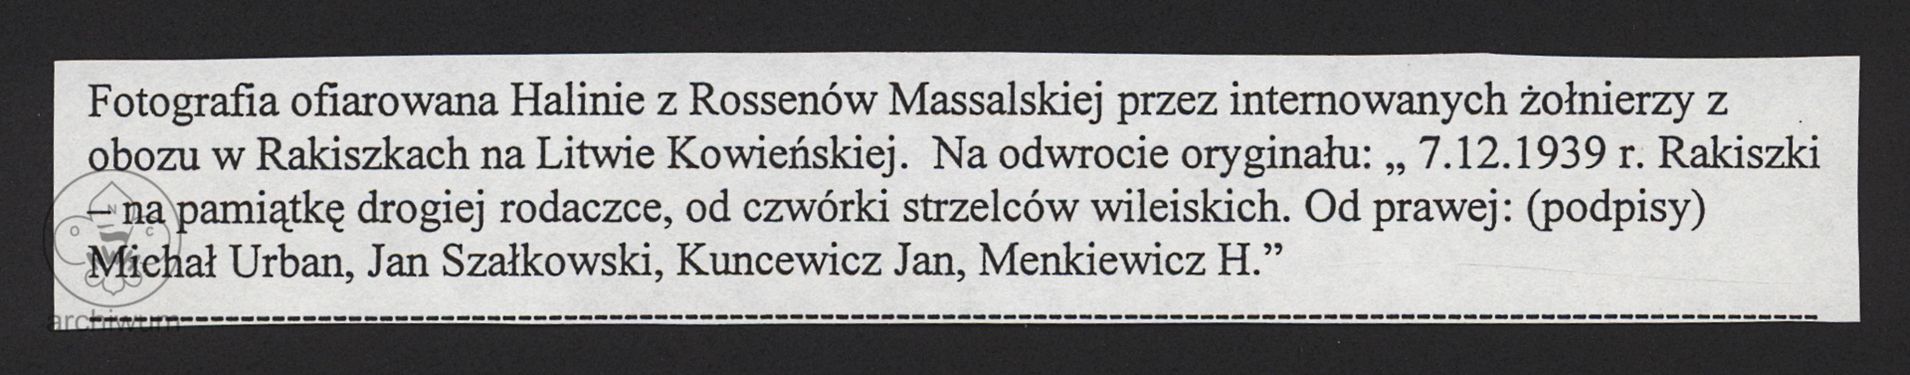 Materiały dot. harcerstwa polskiego na Litwie Kowieńskiej TOM III 068.jpg